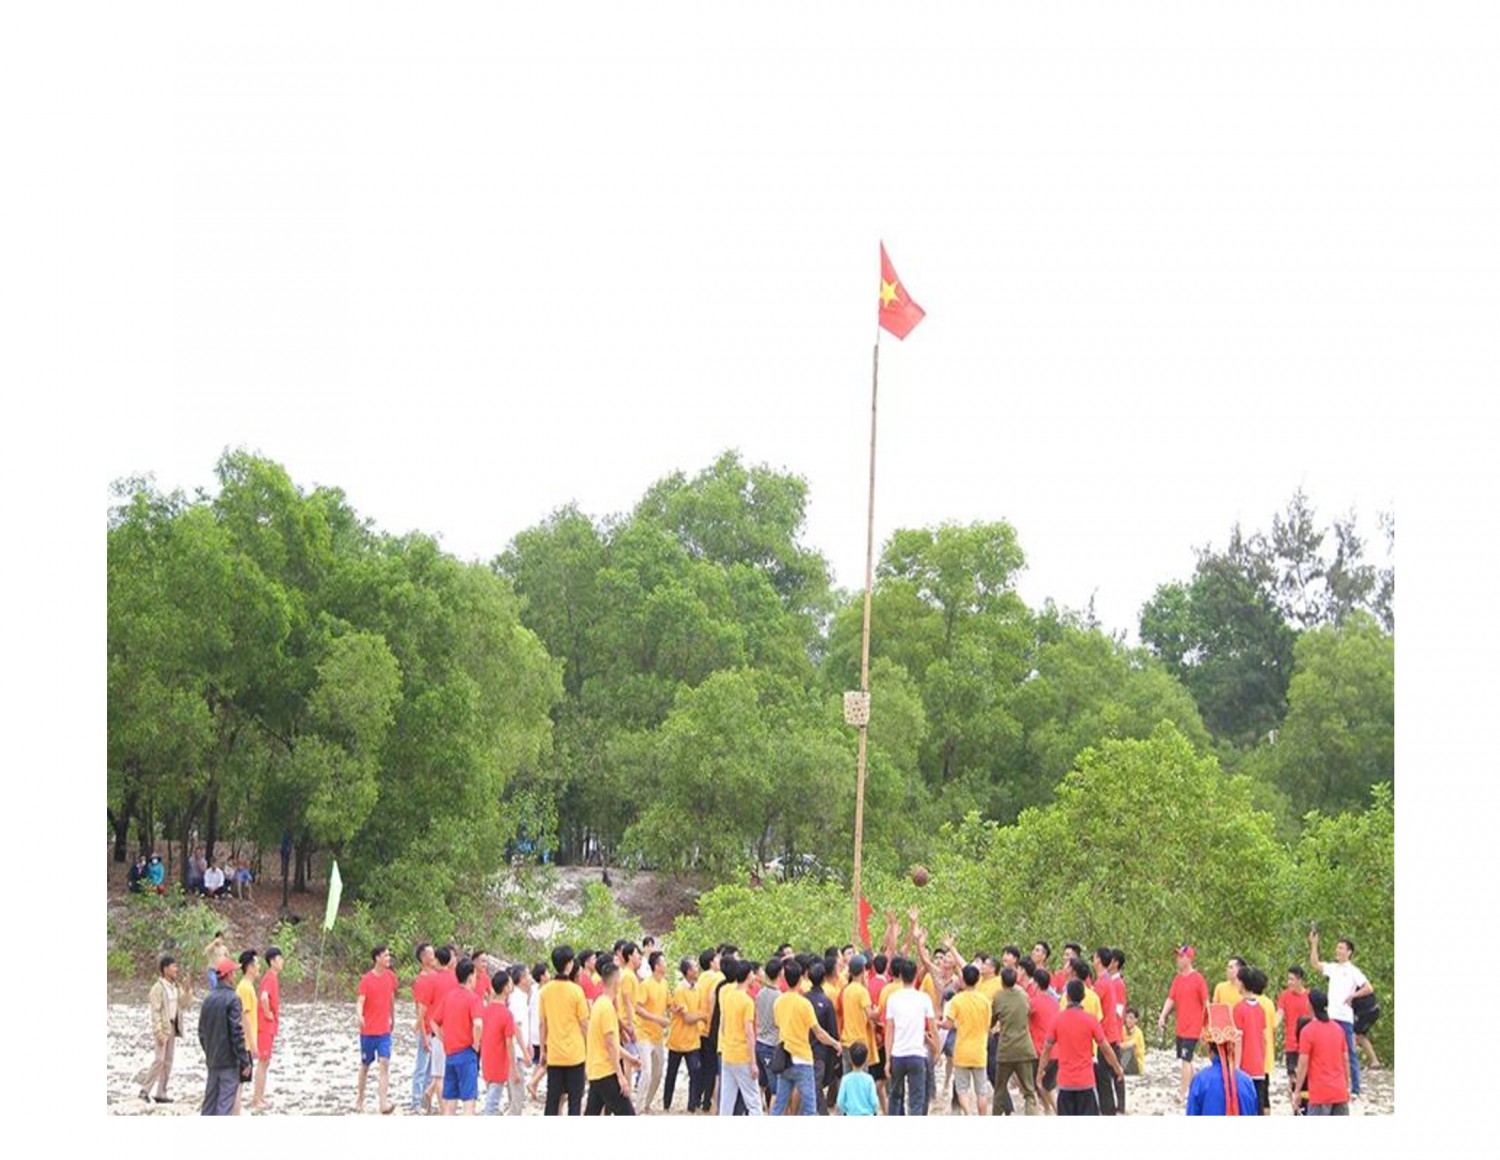 Hội cù truyền thống thôn An Mỹ (xã Gio Mỹ, huyện Gio Linh) thu hút nhiều du khách trong, ngoài tỉnh đến xem, cổ vũ